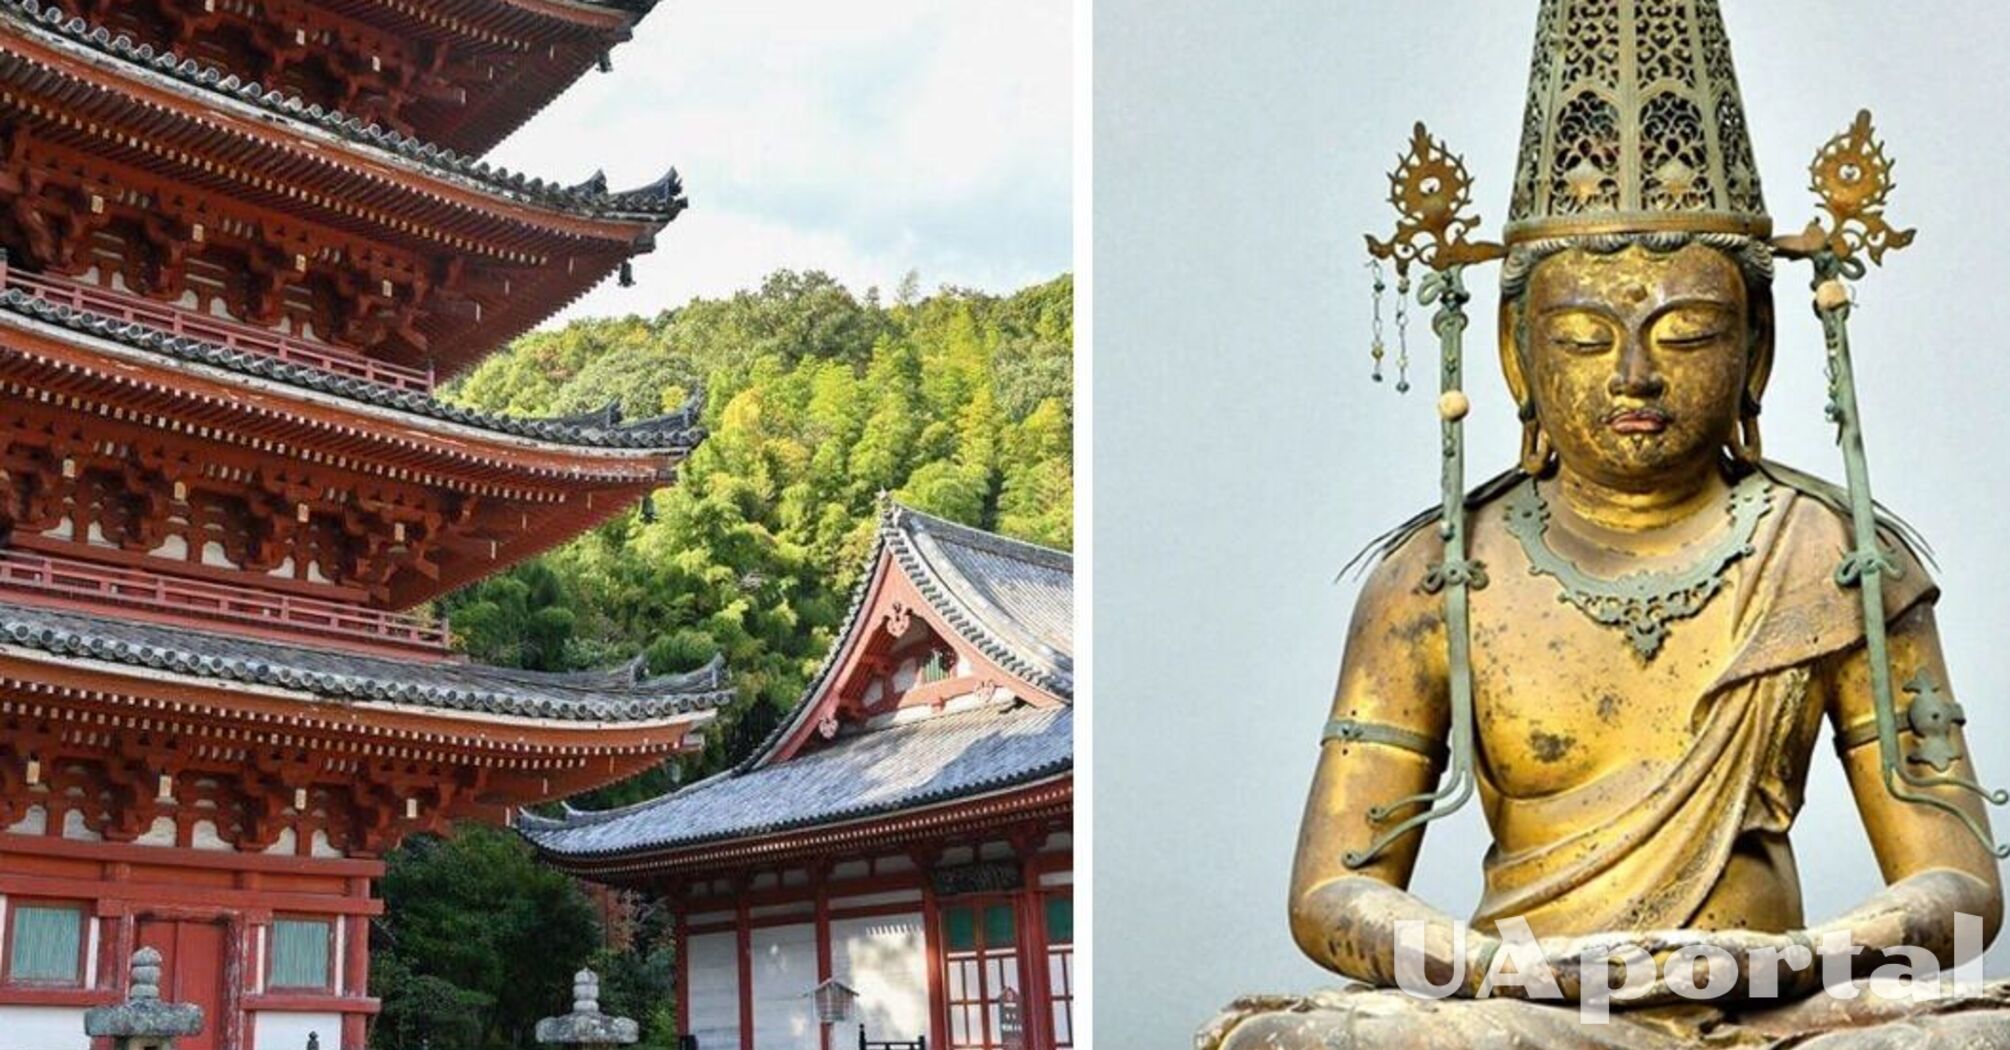 Внутри буддийской статуи 675 лет нашли древнюю японскую бумагу ваши с уникальными рисунками.